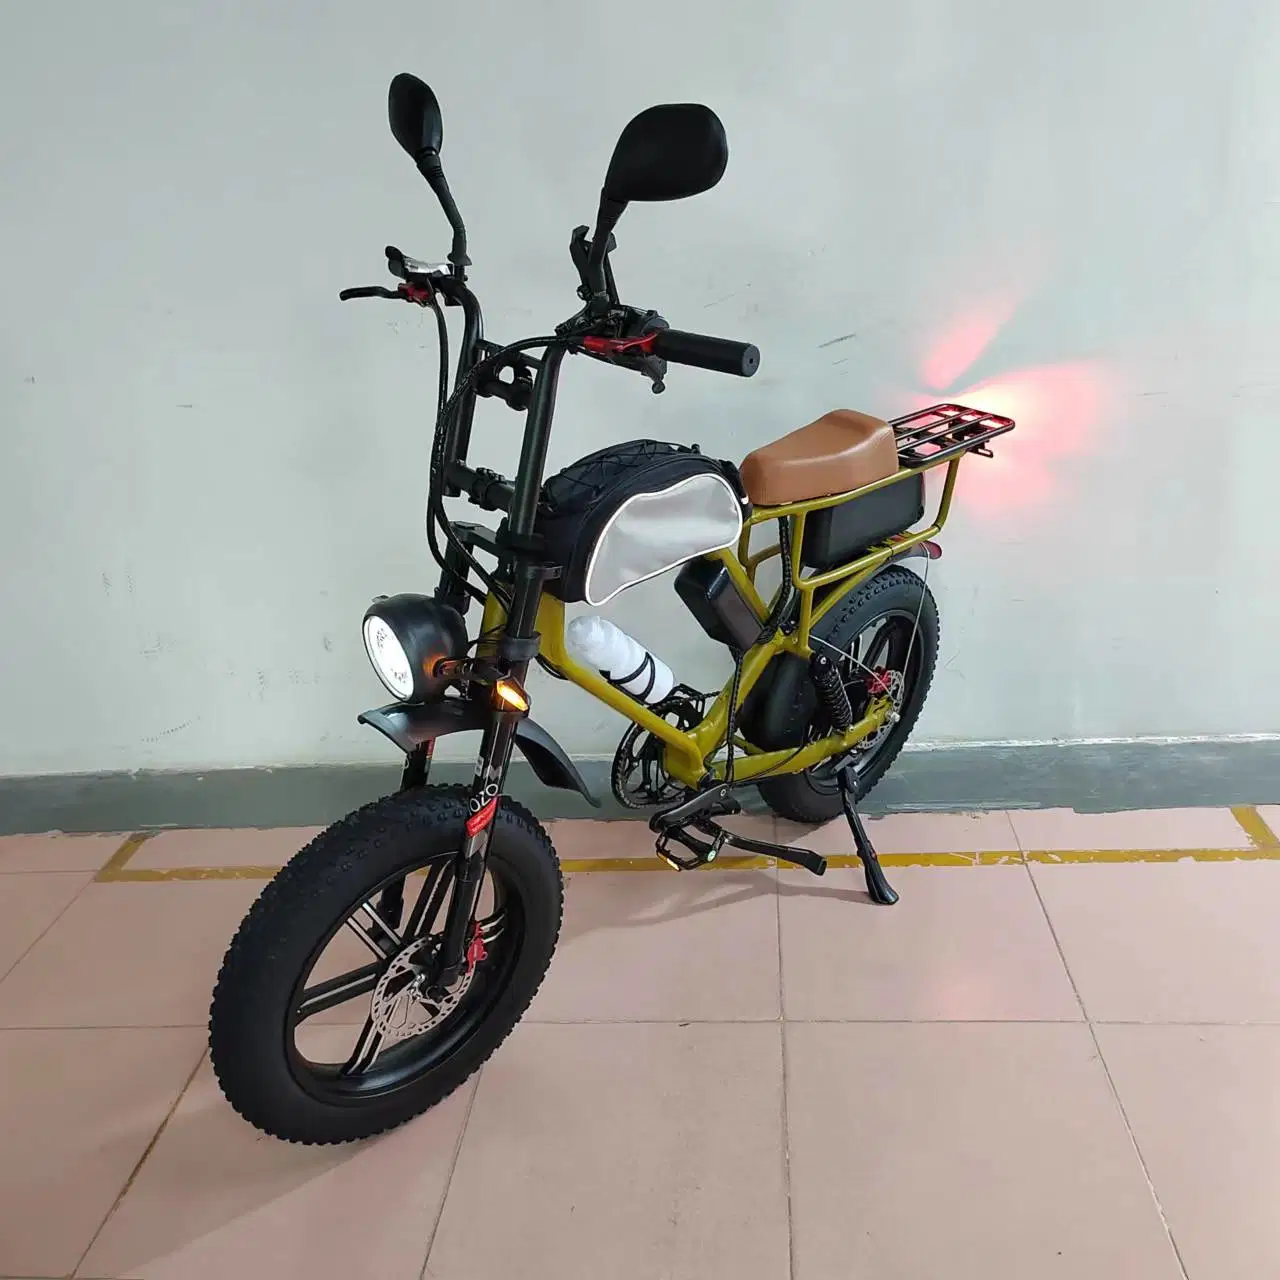 750W Moteur Bafang Vélo électrique de ville Batterie Samsung 52V 22ah